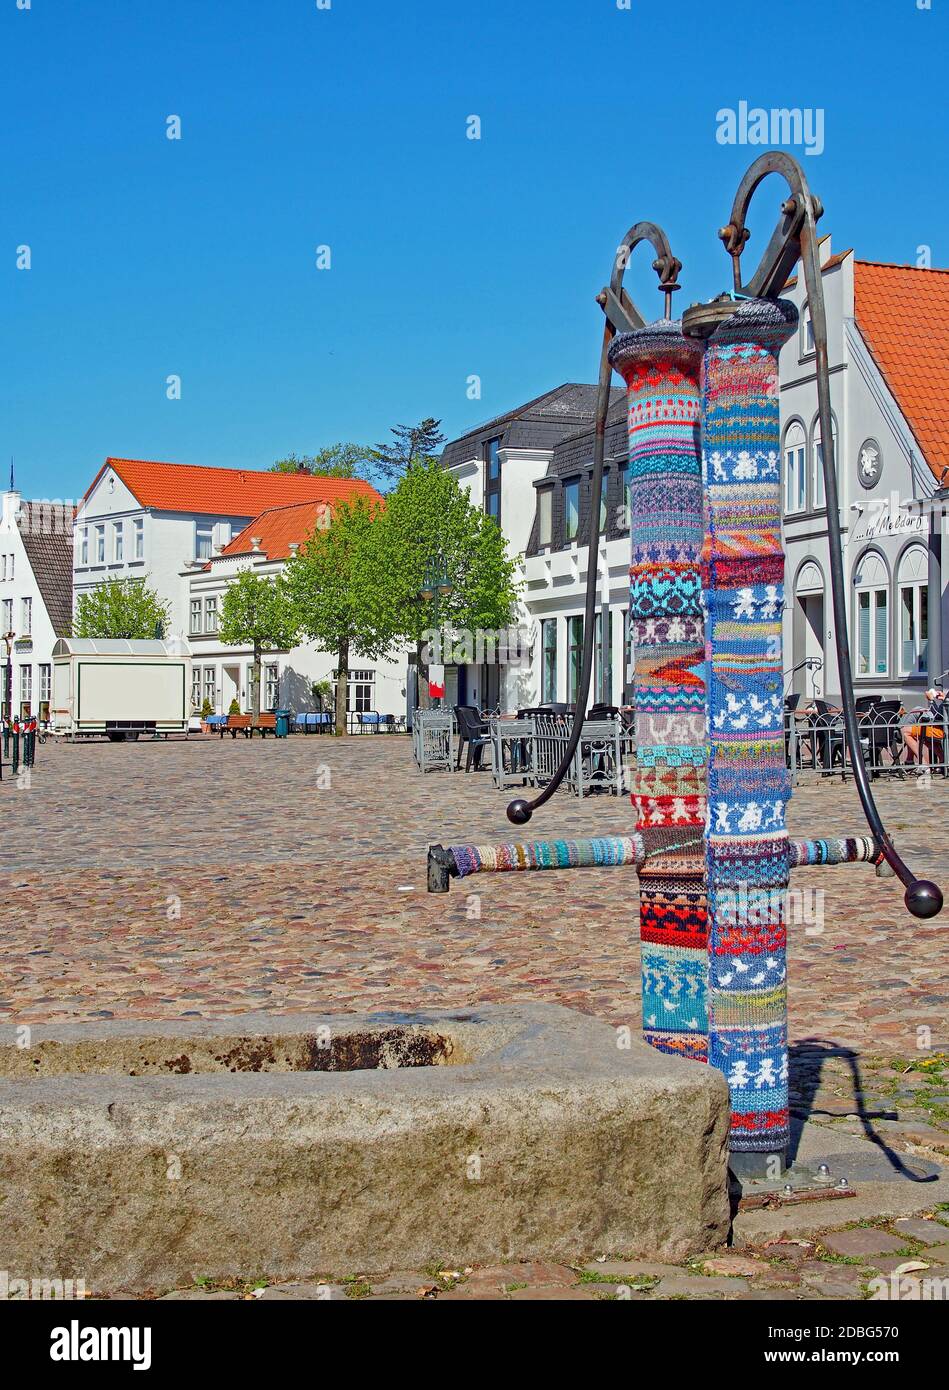 Brunnen am Marktplatz in Meldorf Stock Photo